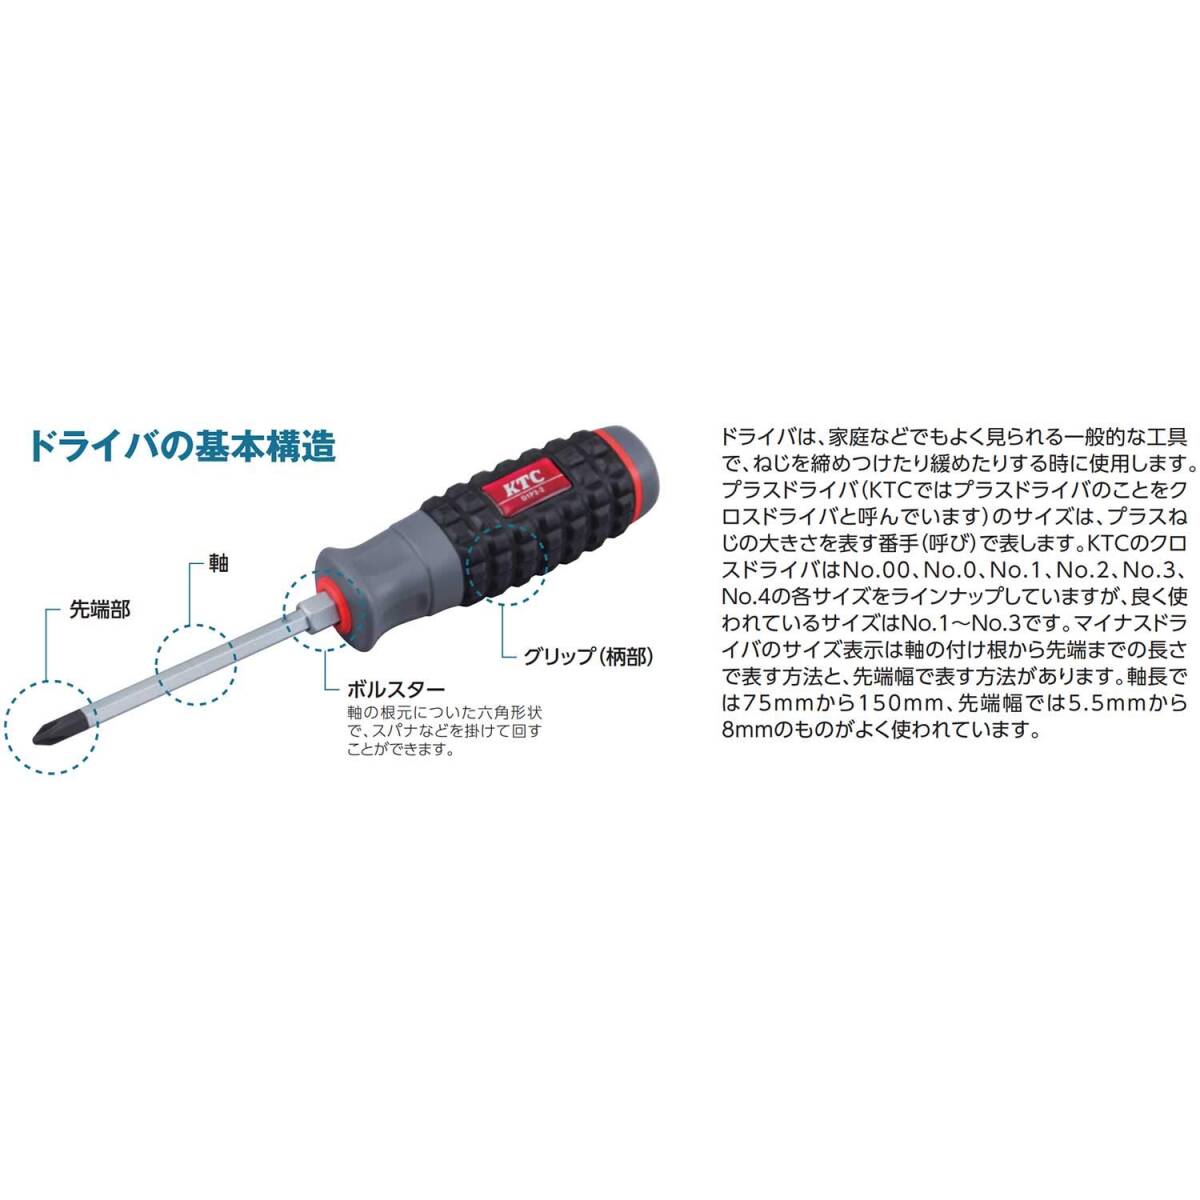 【特価商品】京都機械工具(KTC) ソフトラウンドドライバー マイナス D8M-615_画像3